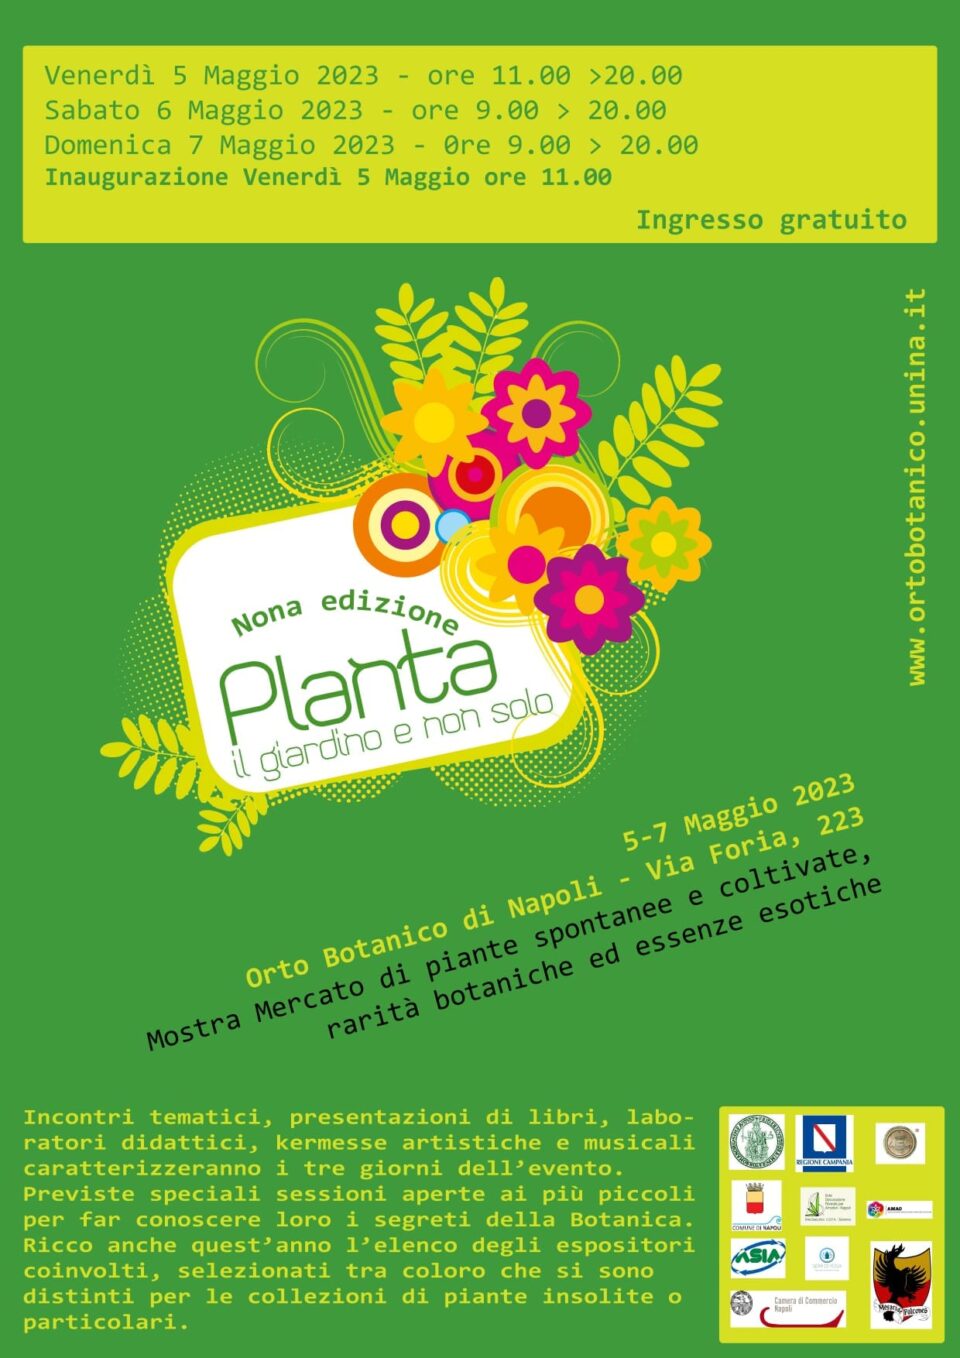 Planta 2023: la mostra mercato gratuita all'Orto Botanico di Napoli